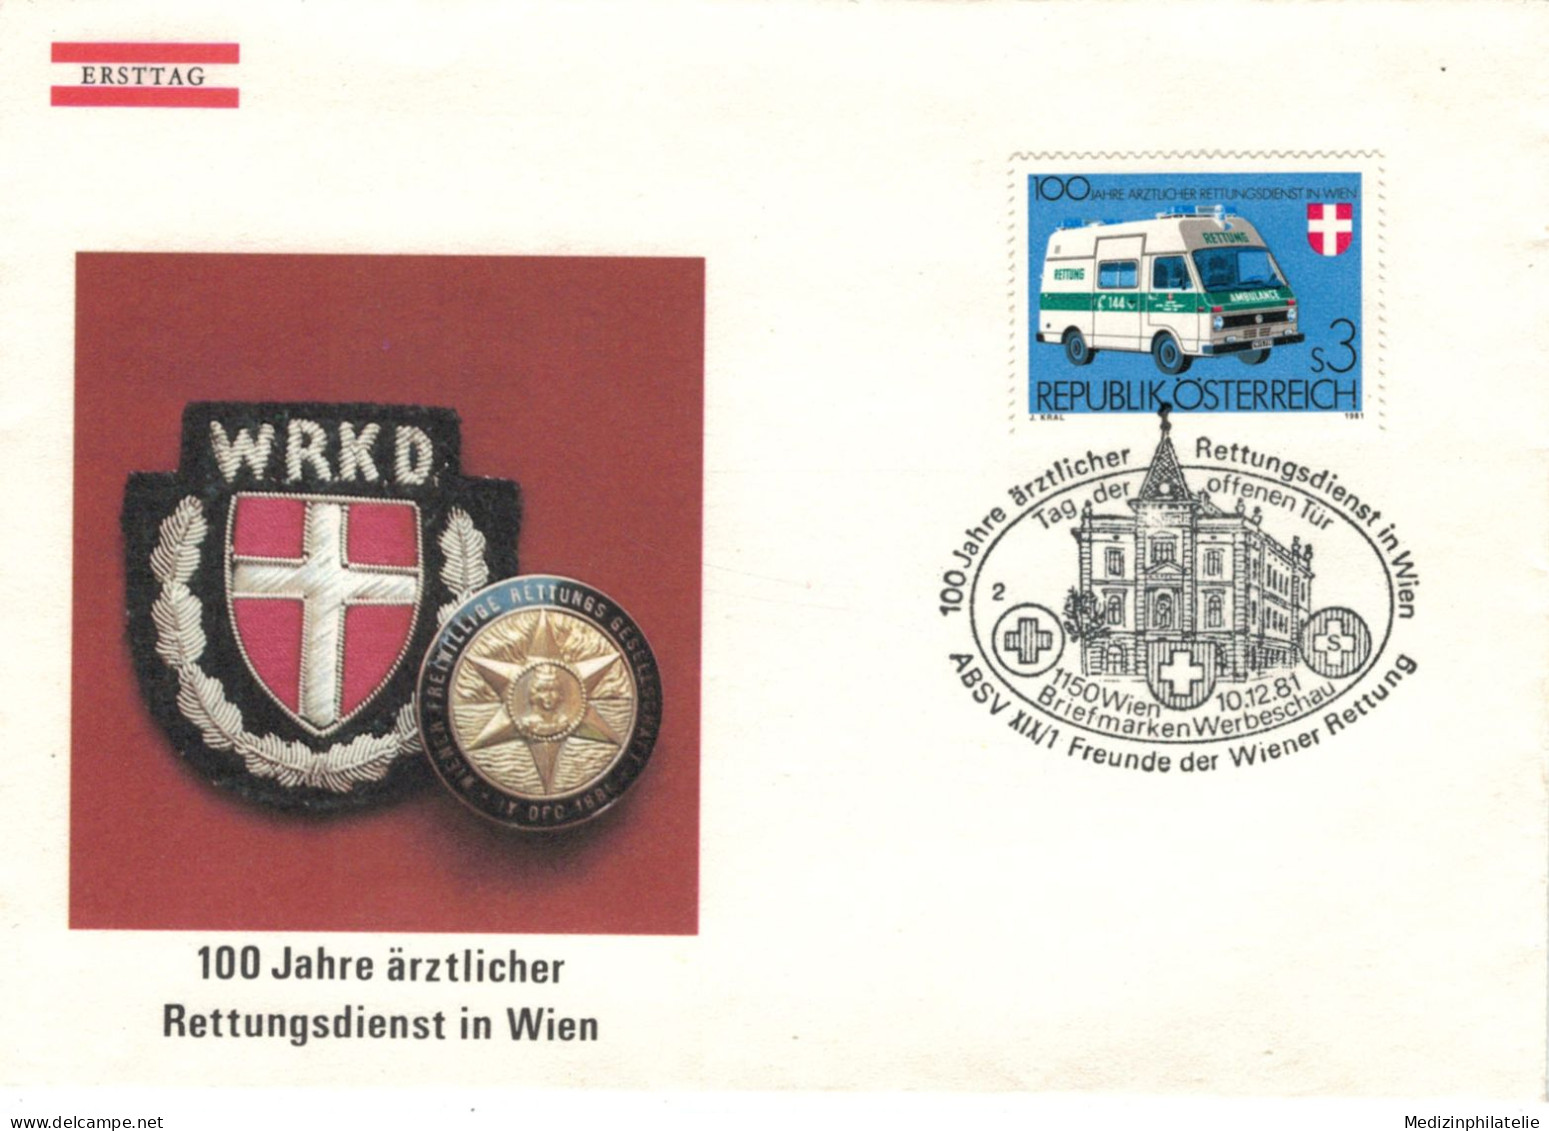 Rotes Kreuz - 1150 Wien 1981 - Rettungsdienst - Offene Tür - Primo Soccorso